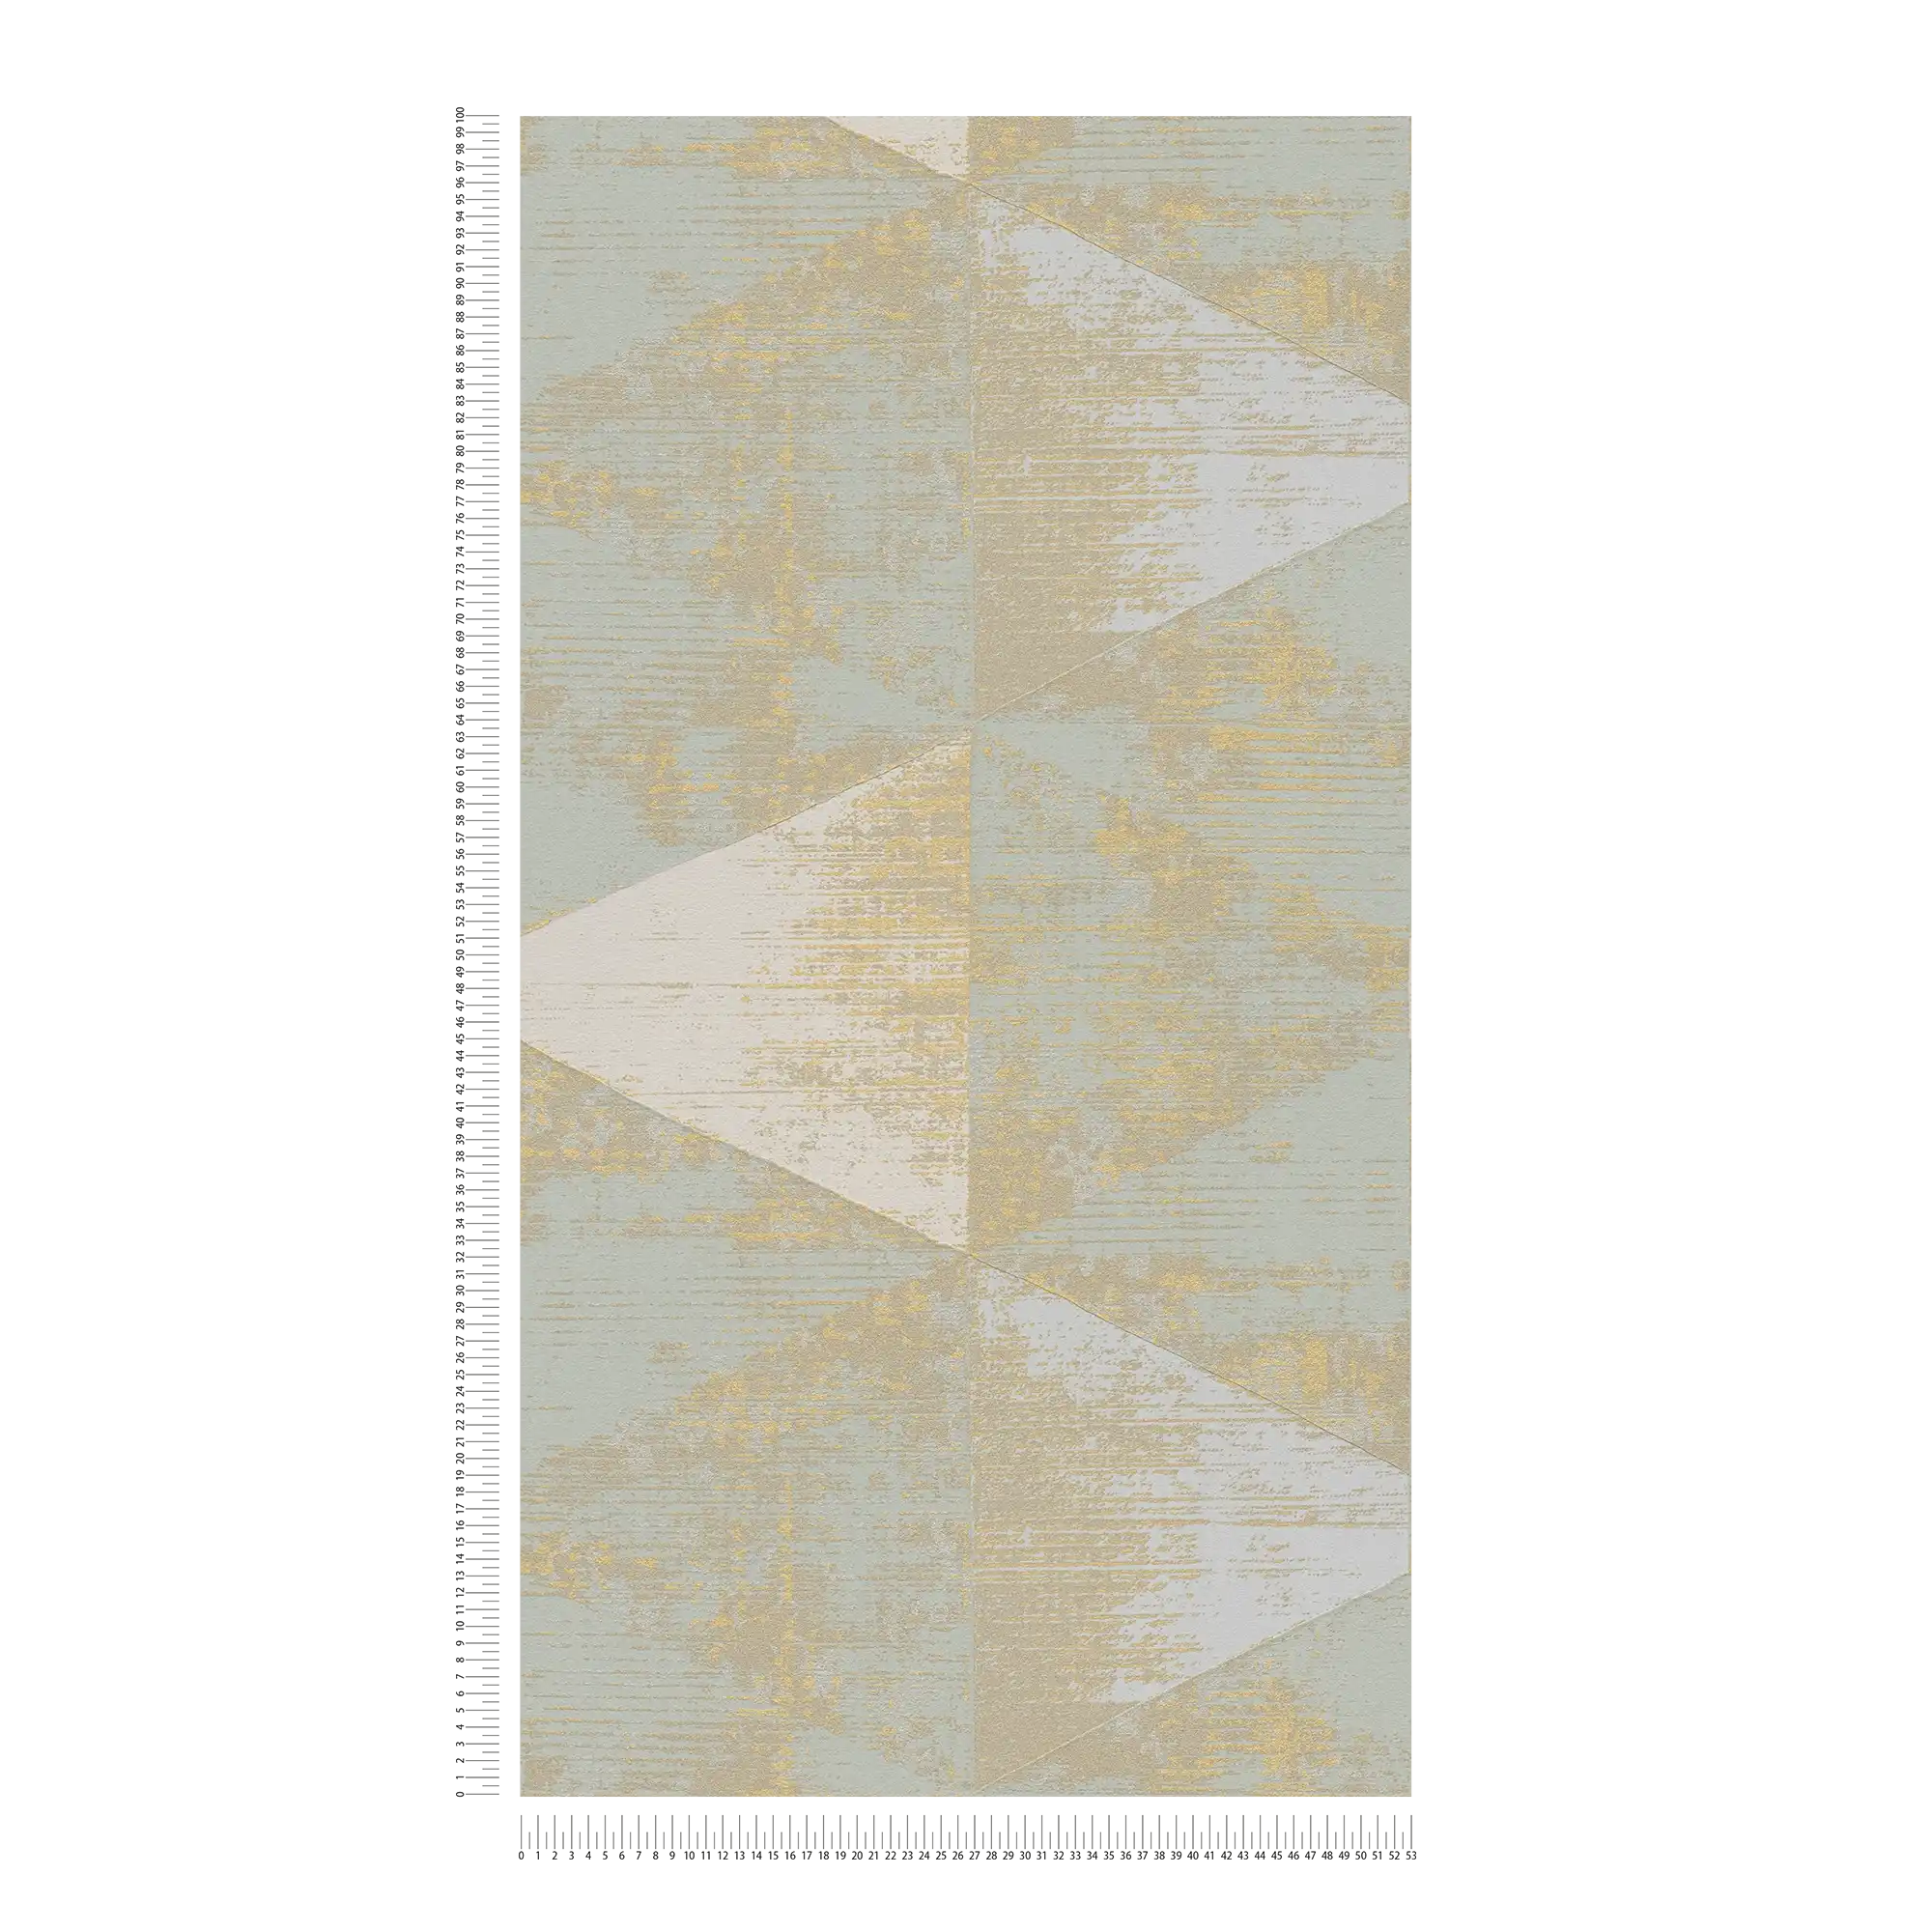             Carta da parati in tessuto non tessuto con accenti metallici - metallizzata, crema, beige
        